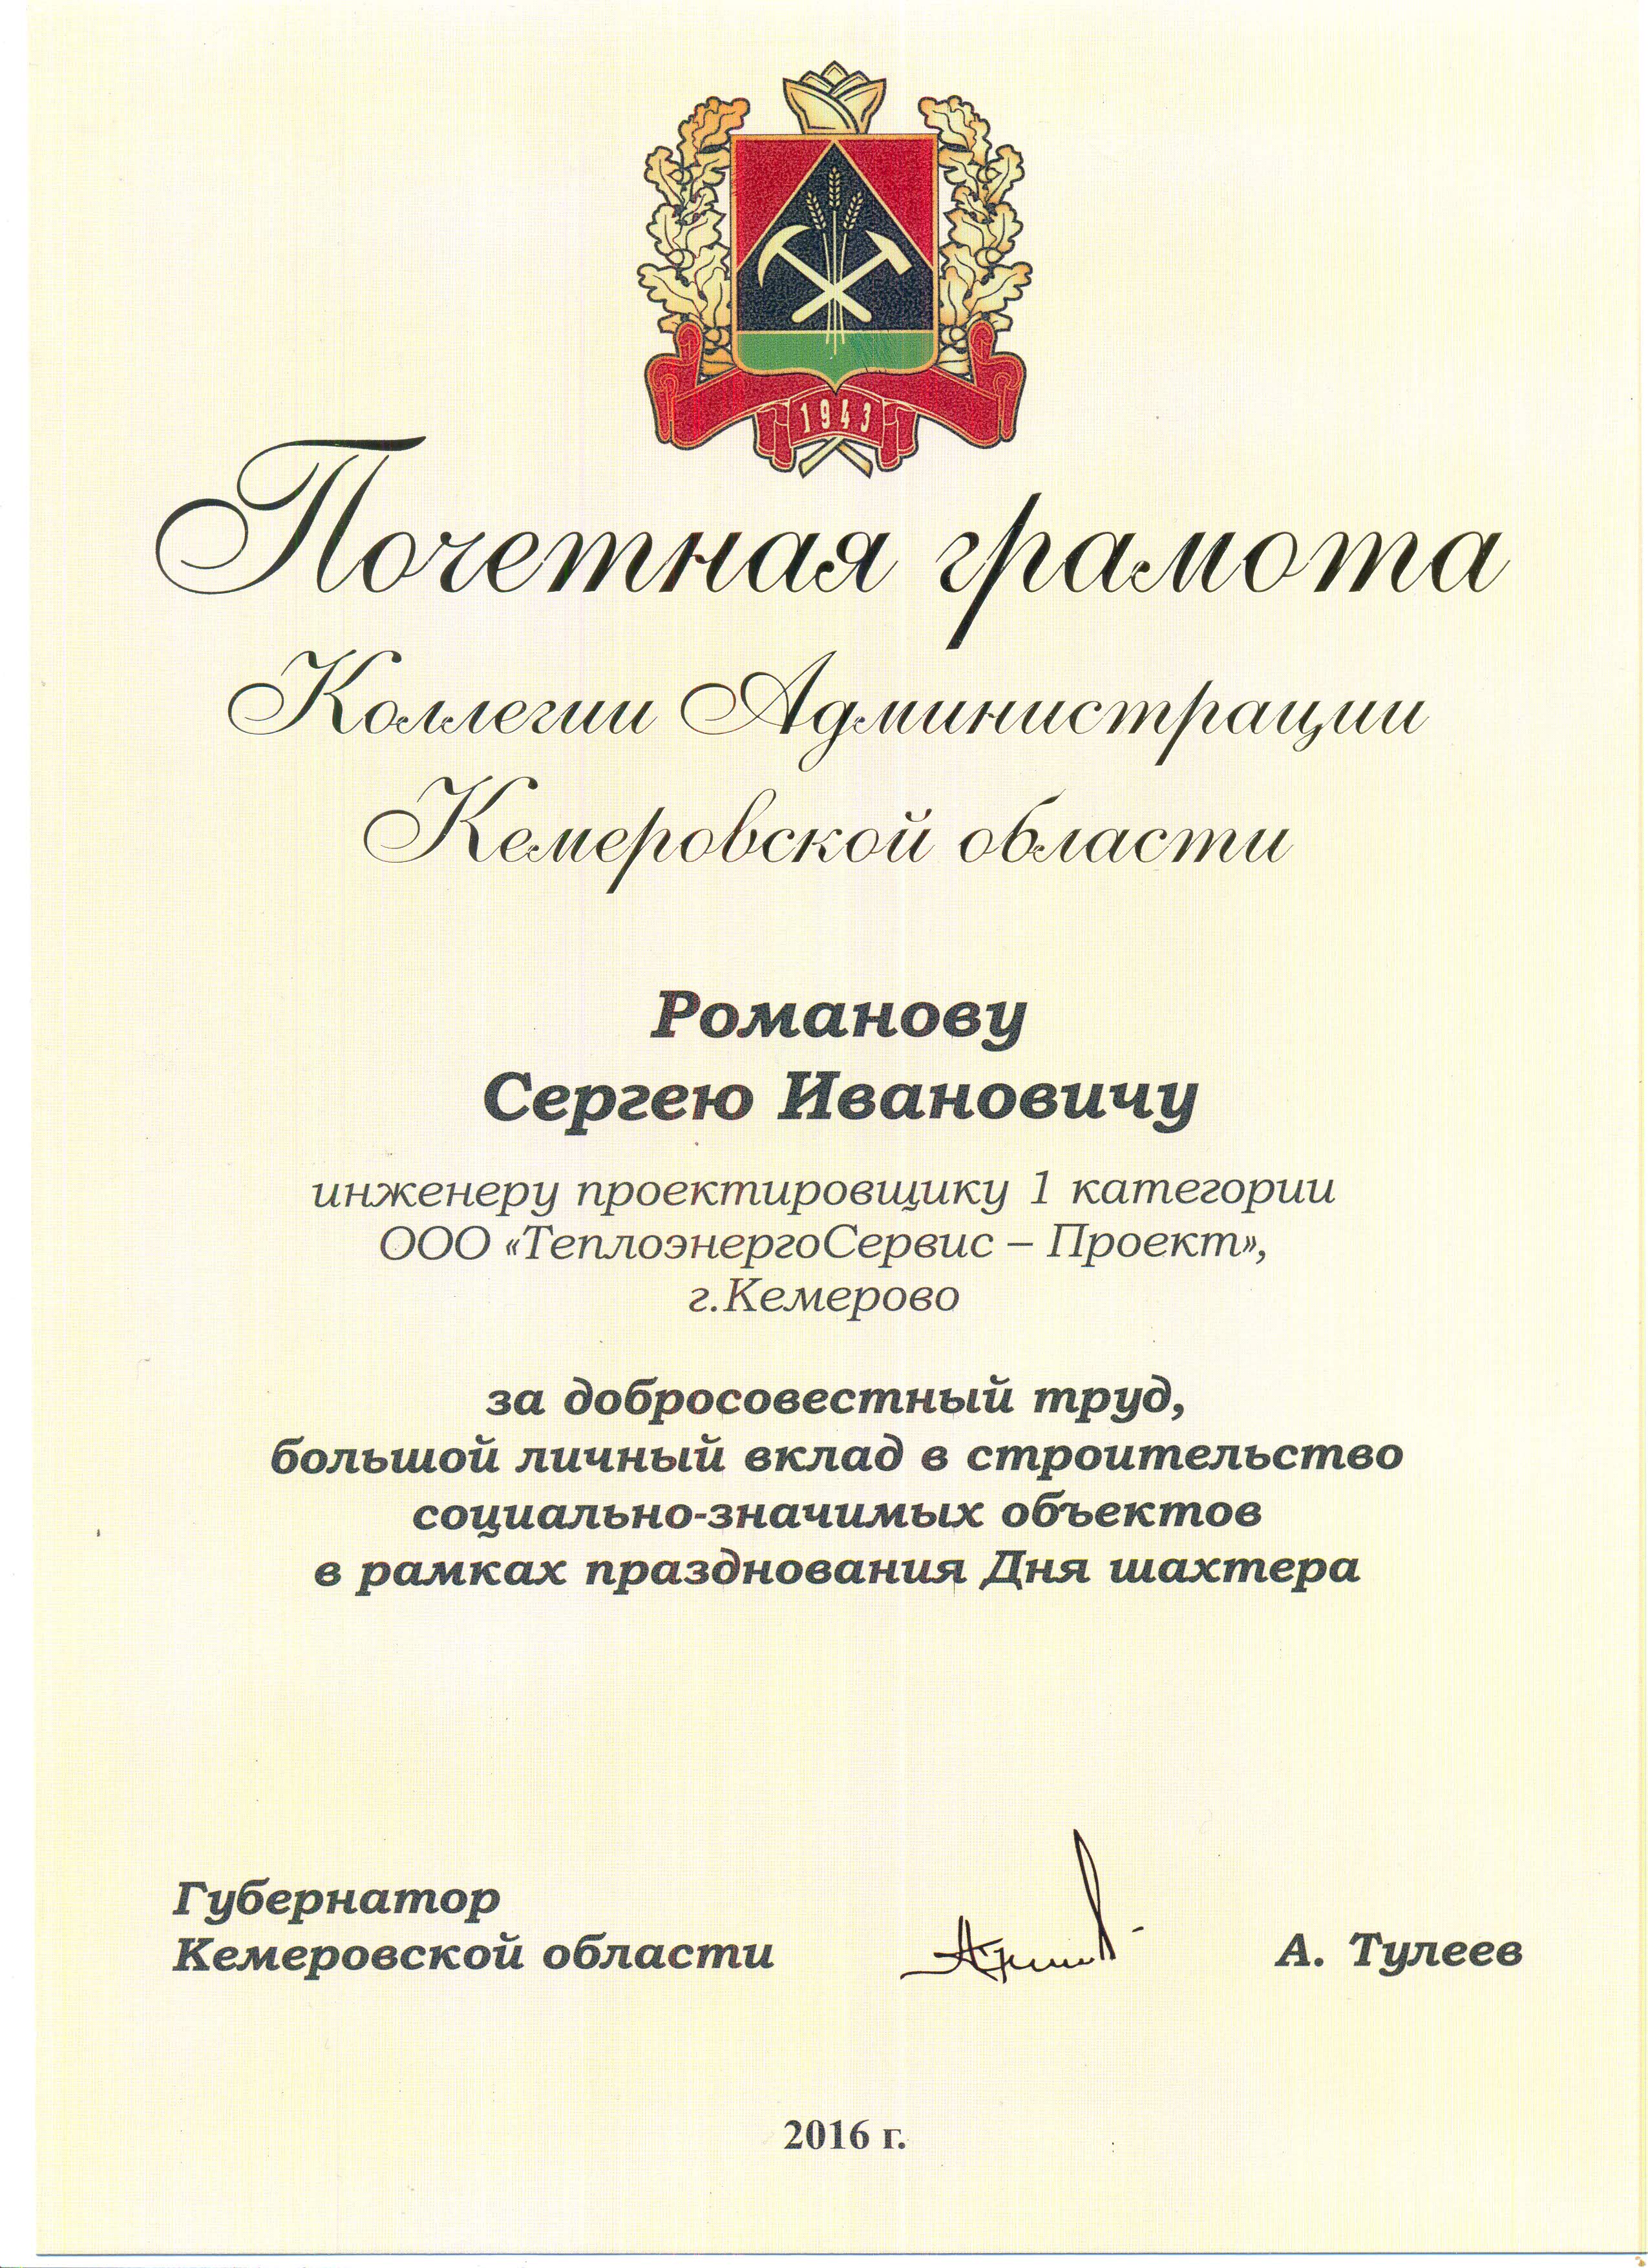 Почетная грамота Коллегии Администрации Кемеровской области Романову Сергею Ивановичу